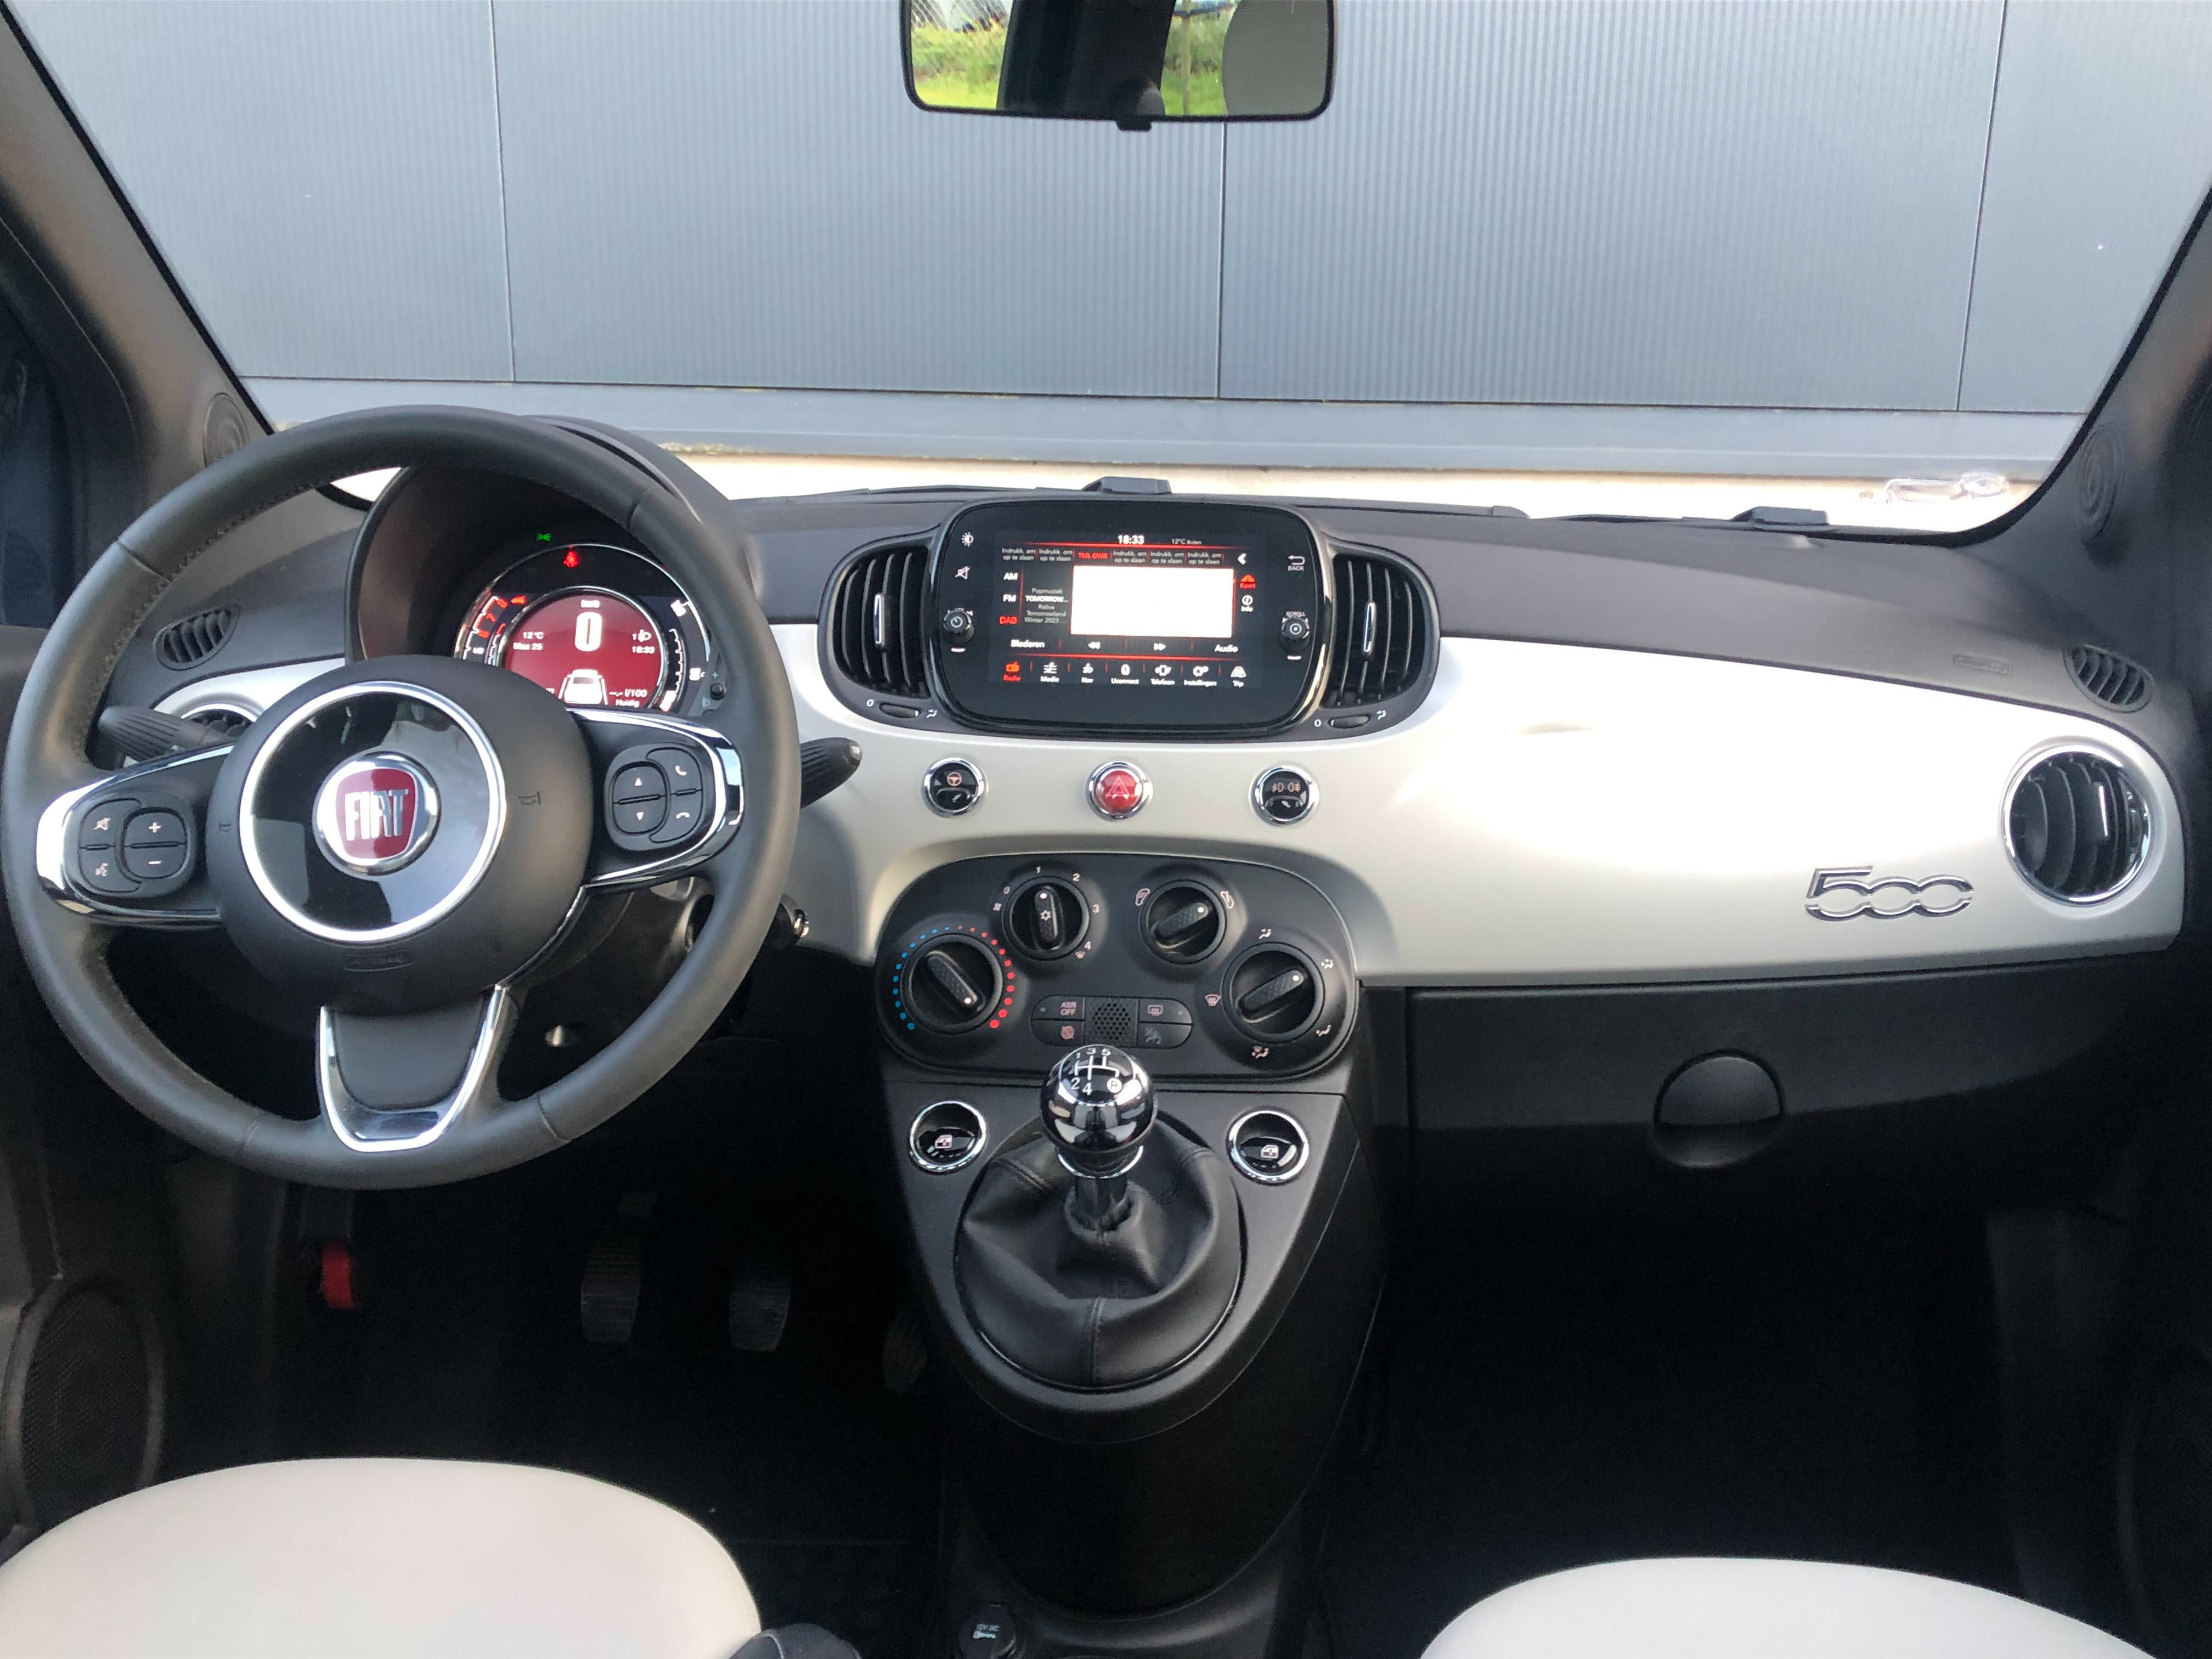 Fiat 500 Star 1.2 - 06-2020 - 33000km - Pic 7